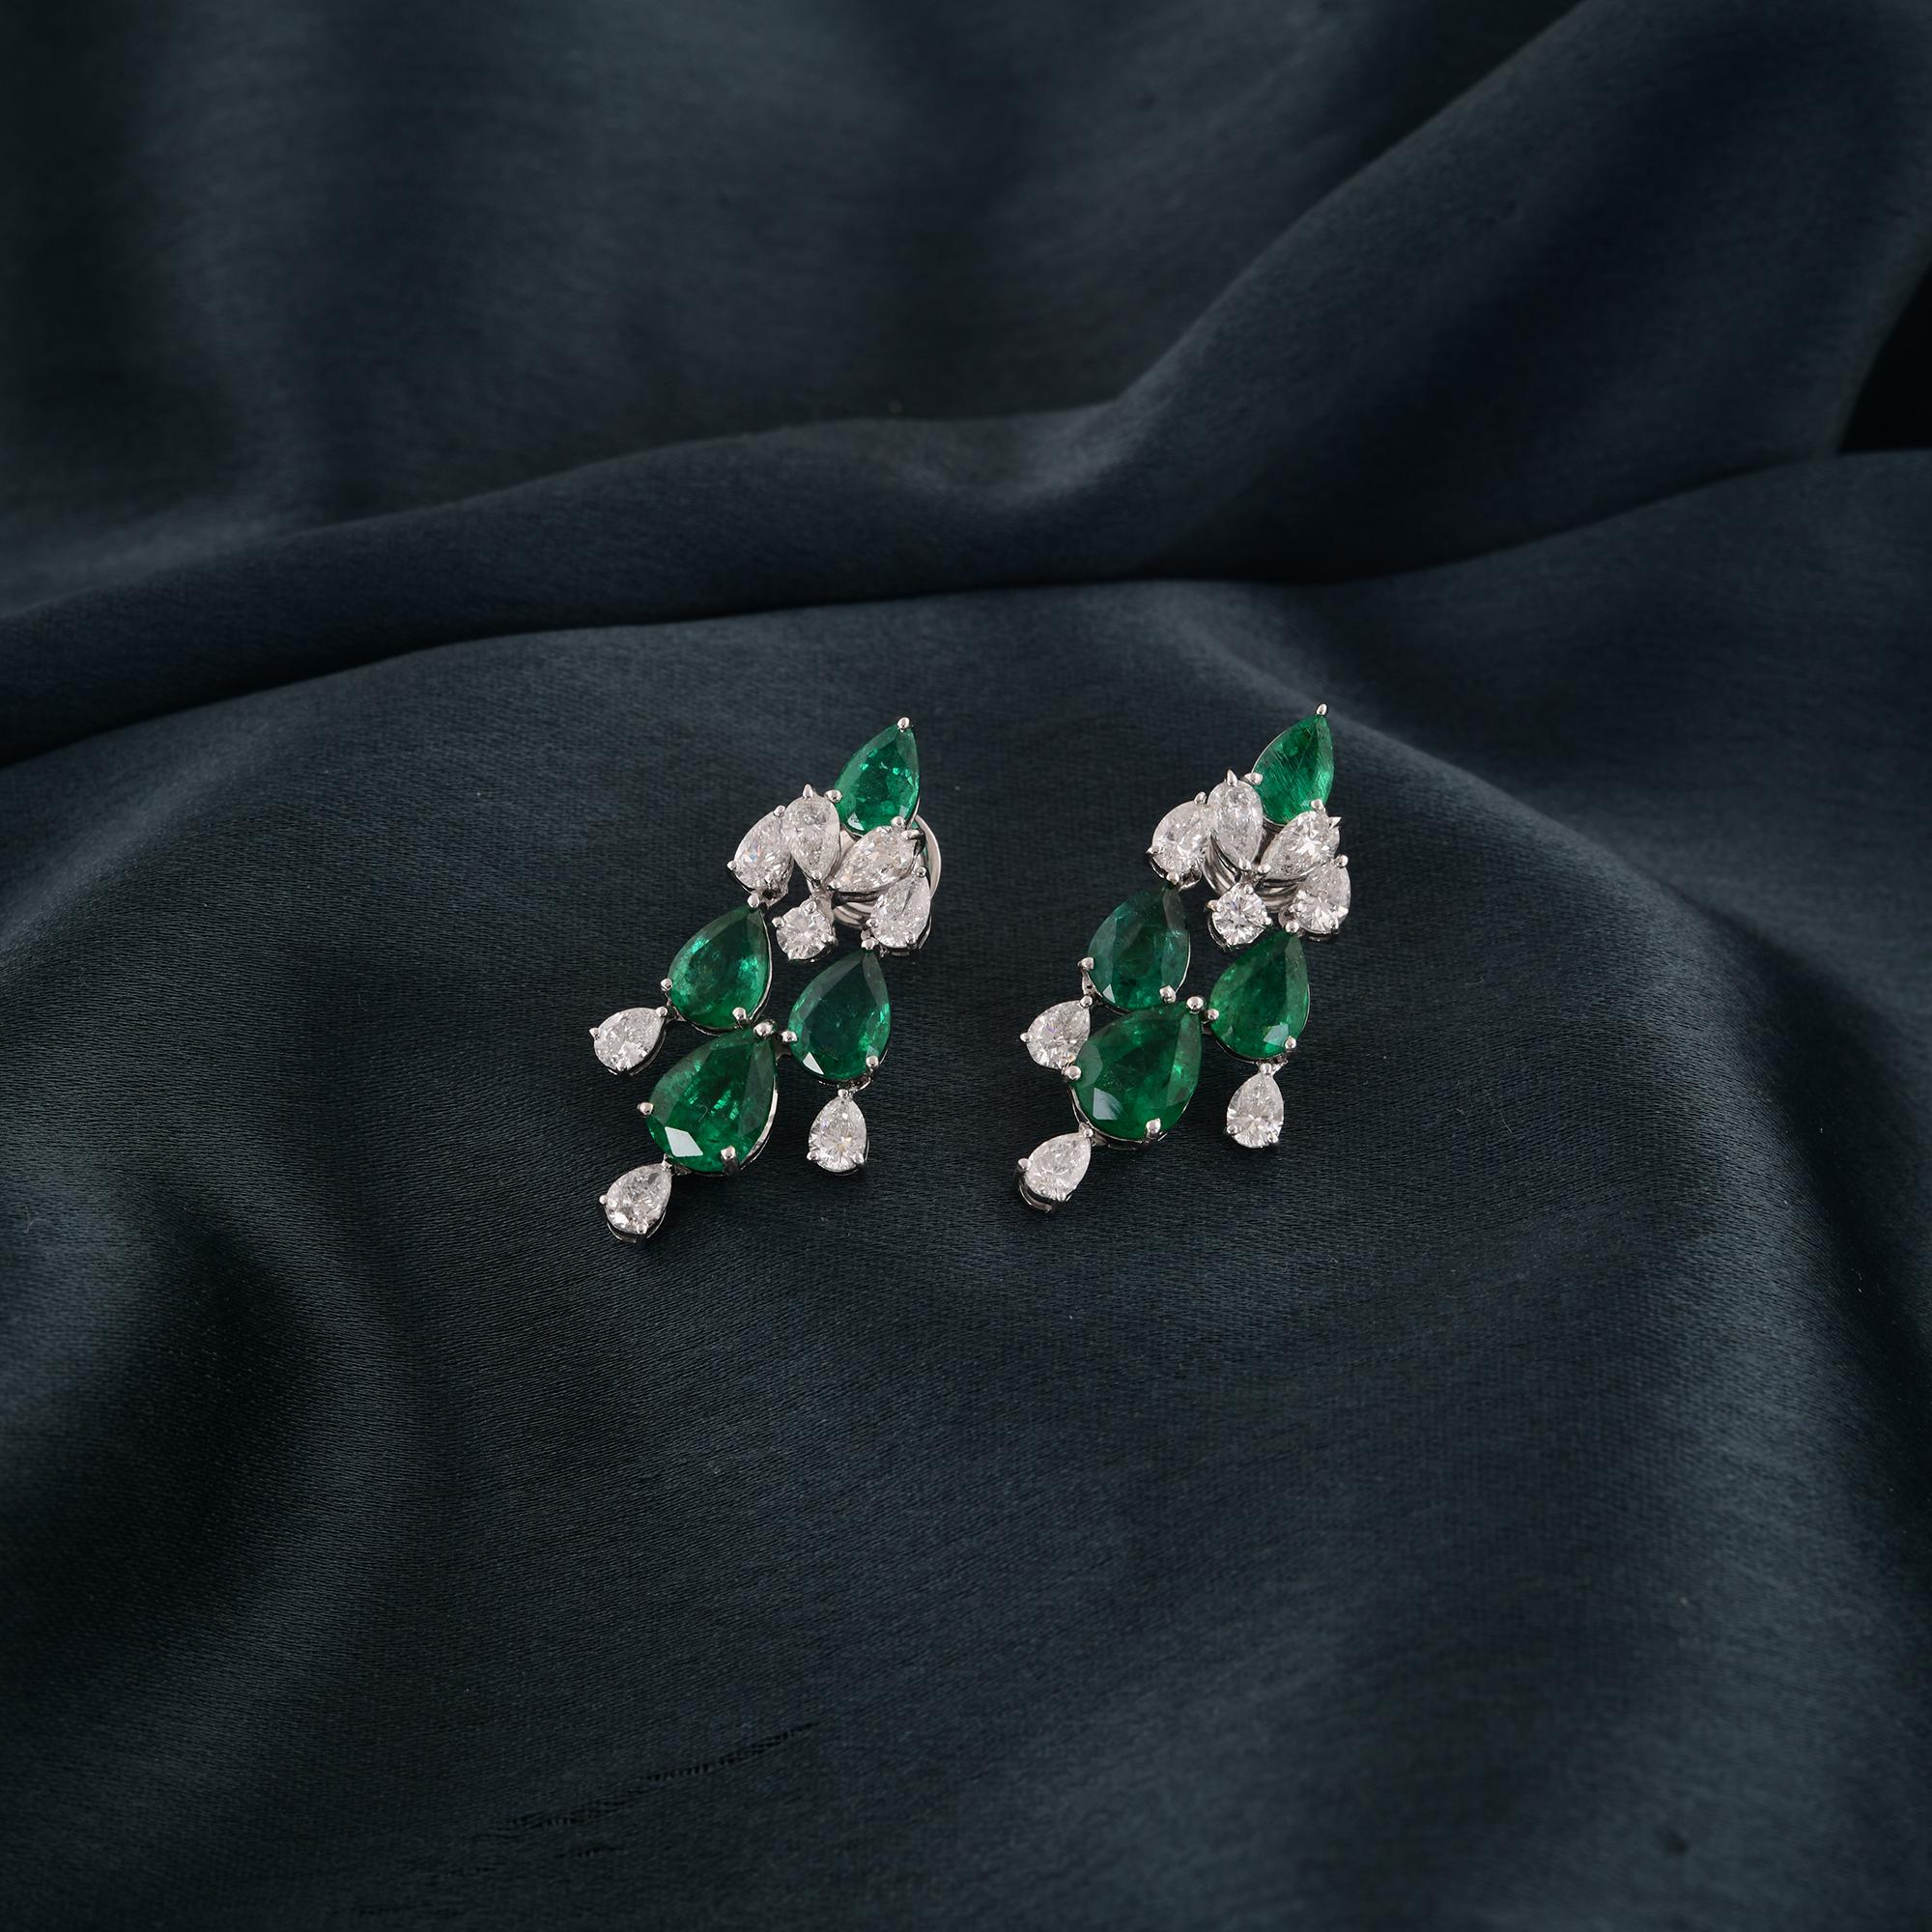 Modern Real Zambian Emerald Gemstone Earrings Diamond 18 Karat White Gold Fine Jewelry For Sale